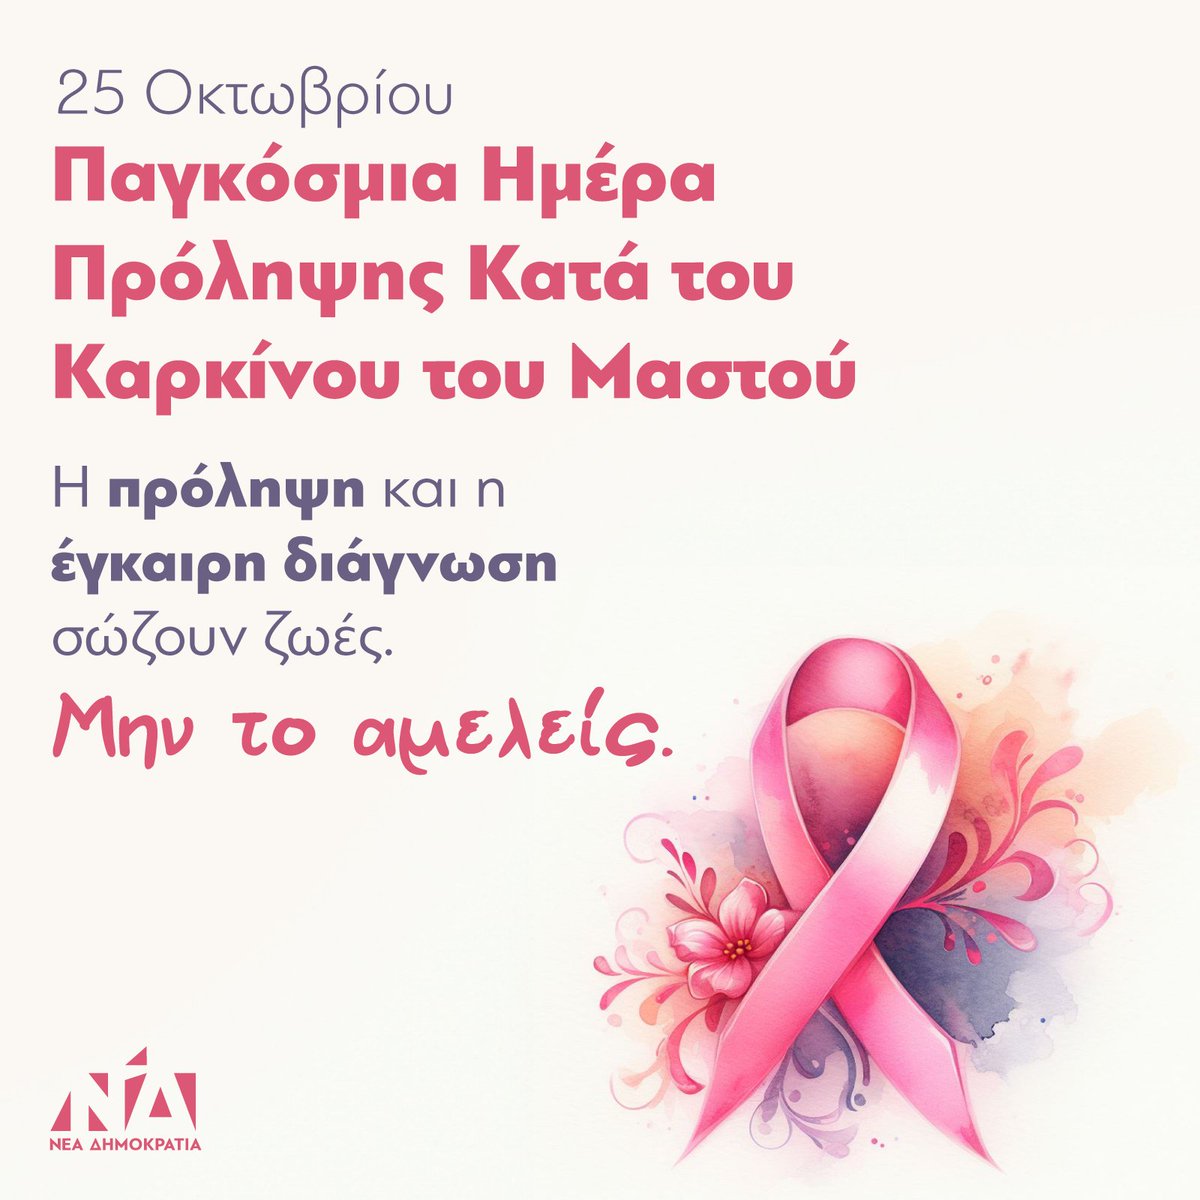 Σήμερα, Παγκόσμια Ημέρα Πρόληψης κατά του Καρκίνου του Μαστού, είναι ακόμα μία ευκαιρία για να τονίσουμε την τεράστια σημασία της πρόληψης και της έγκαιρης διάγνωσης. Μην το αμελείς, η πρόληψη σώζει ζωές.